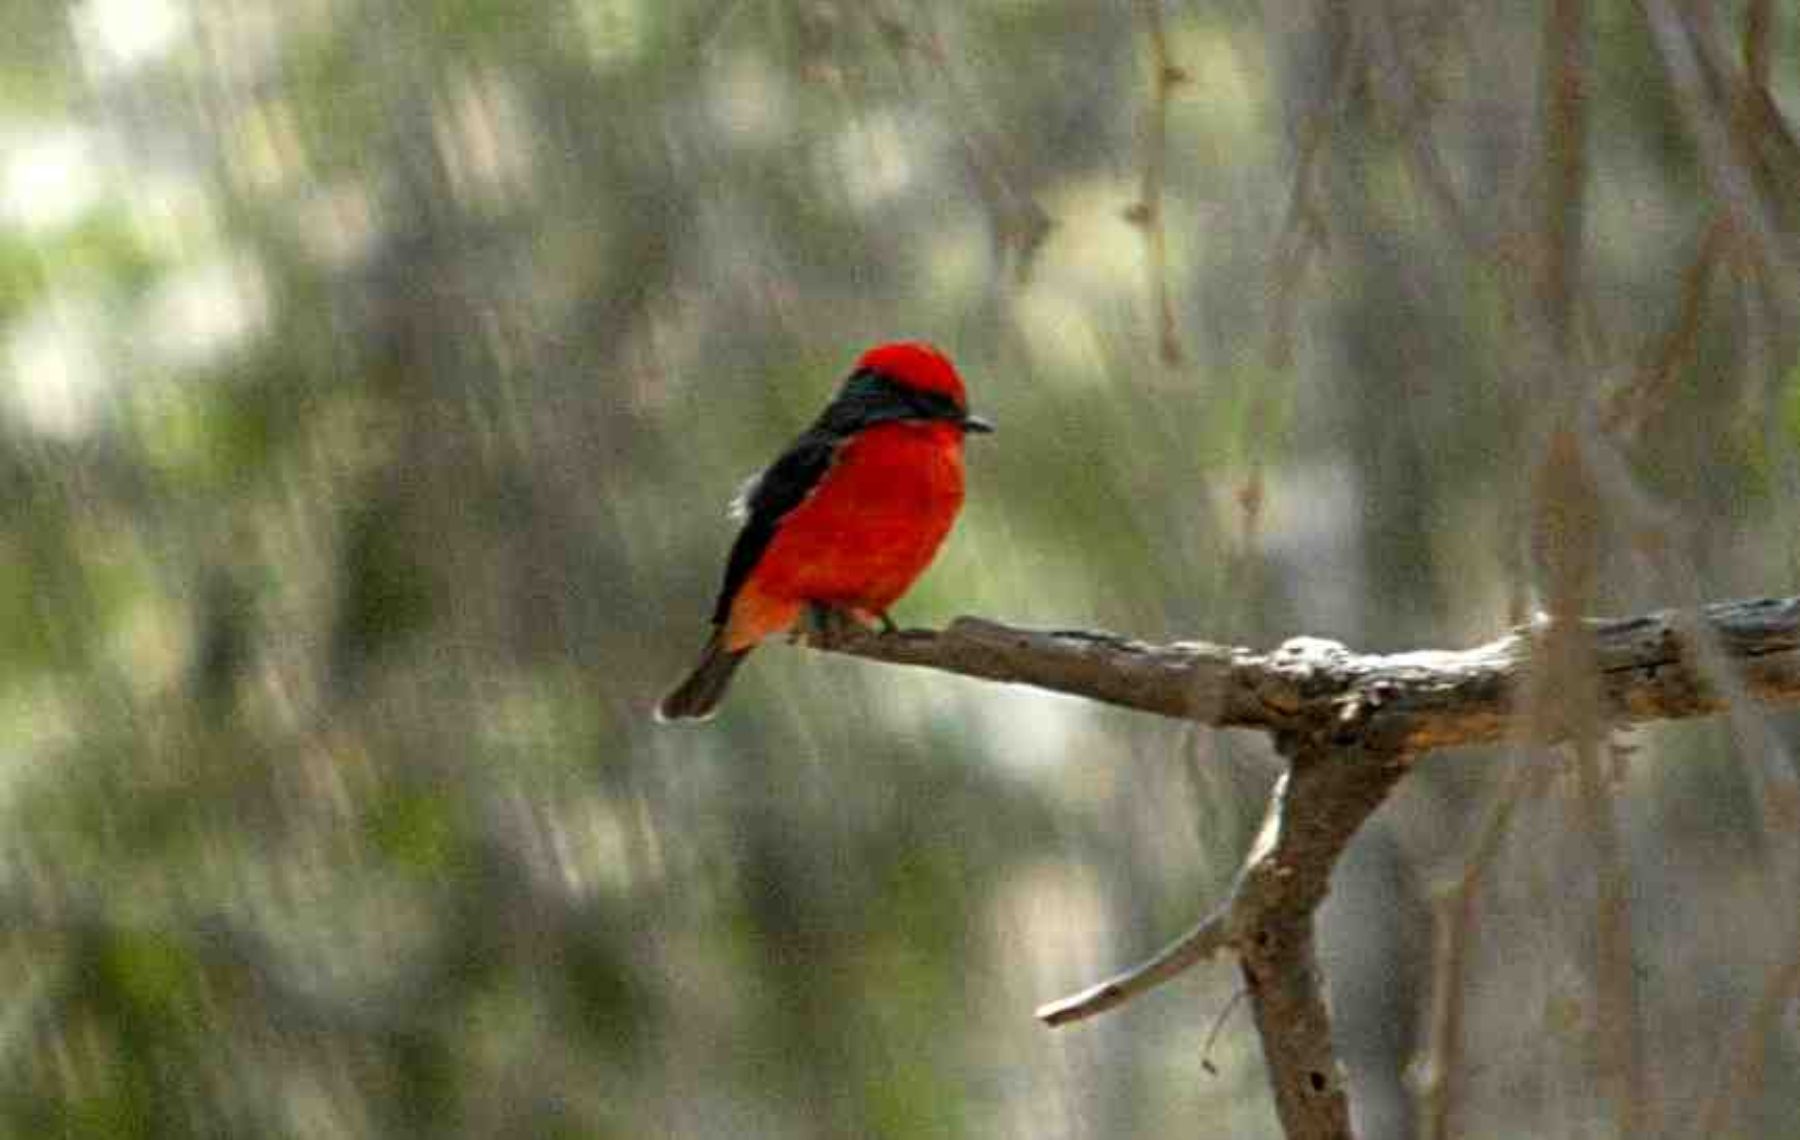 Chaparrí es uno de los lugares que alberga una gran variedad de aves, convirtiéndolo en una importante zona para su observación.